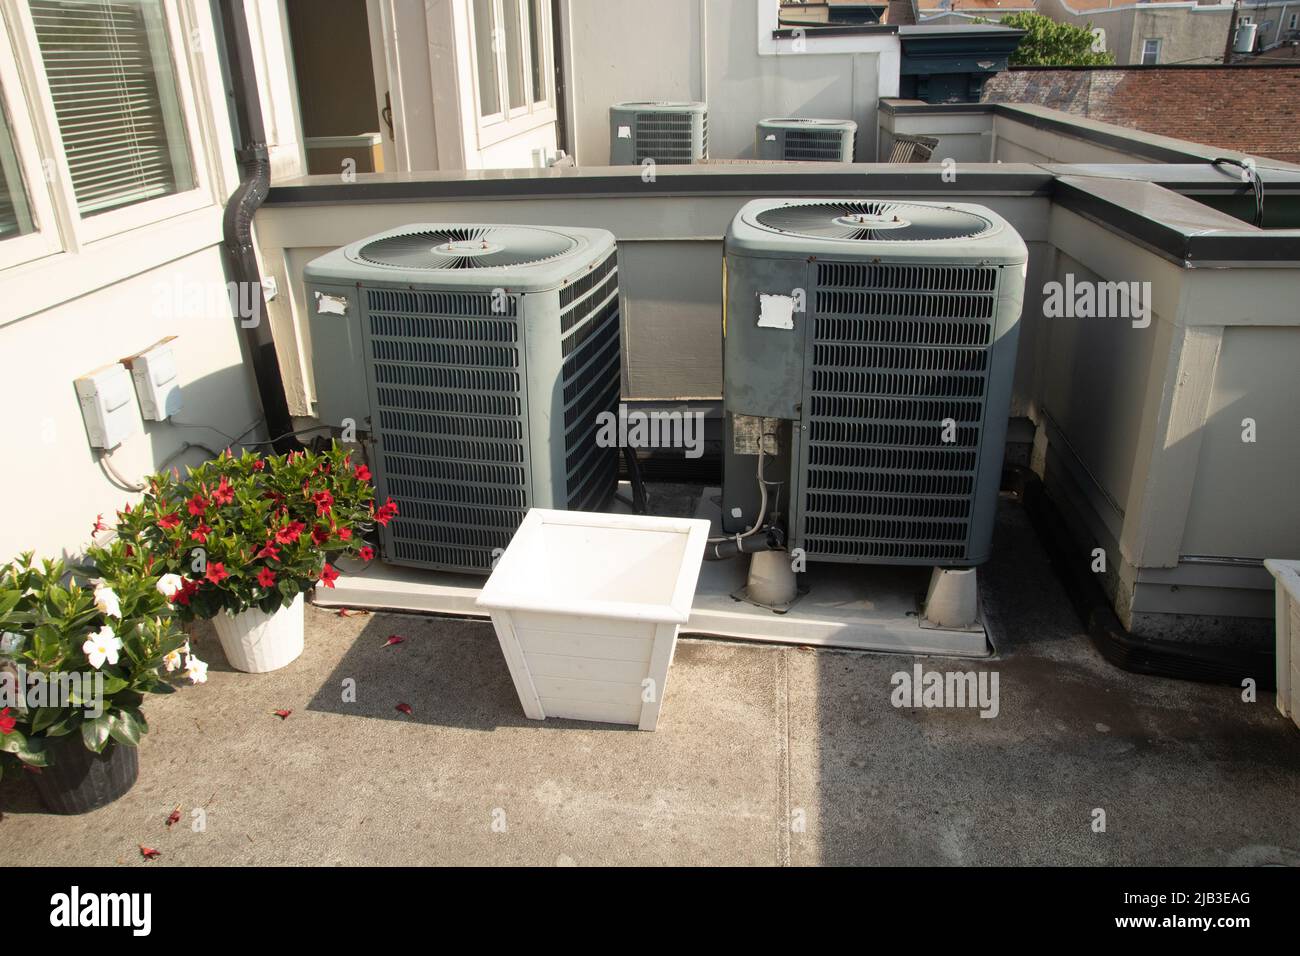 Unidades de aire acondicionado en la terraza del tejado al sol con plantas Foto de stock